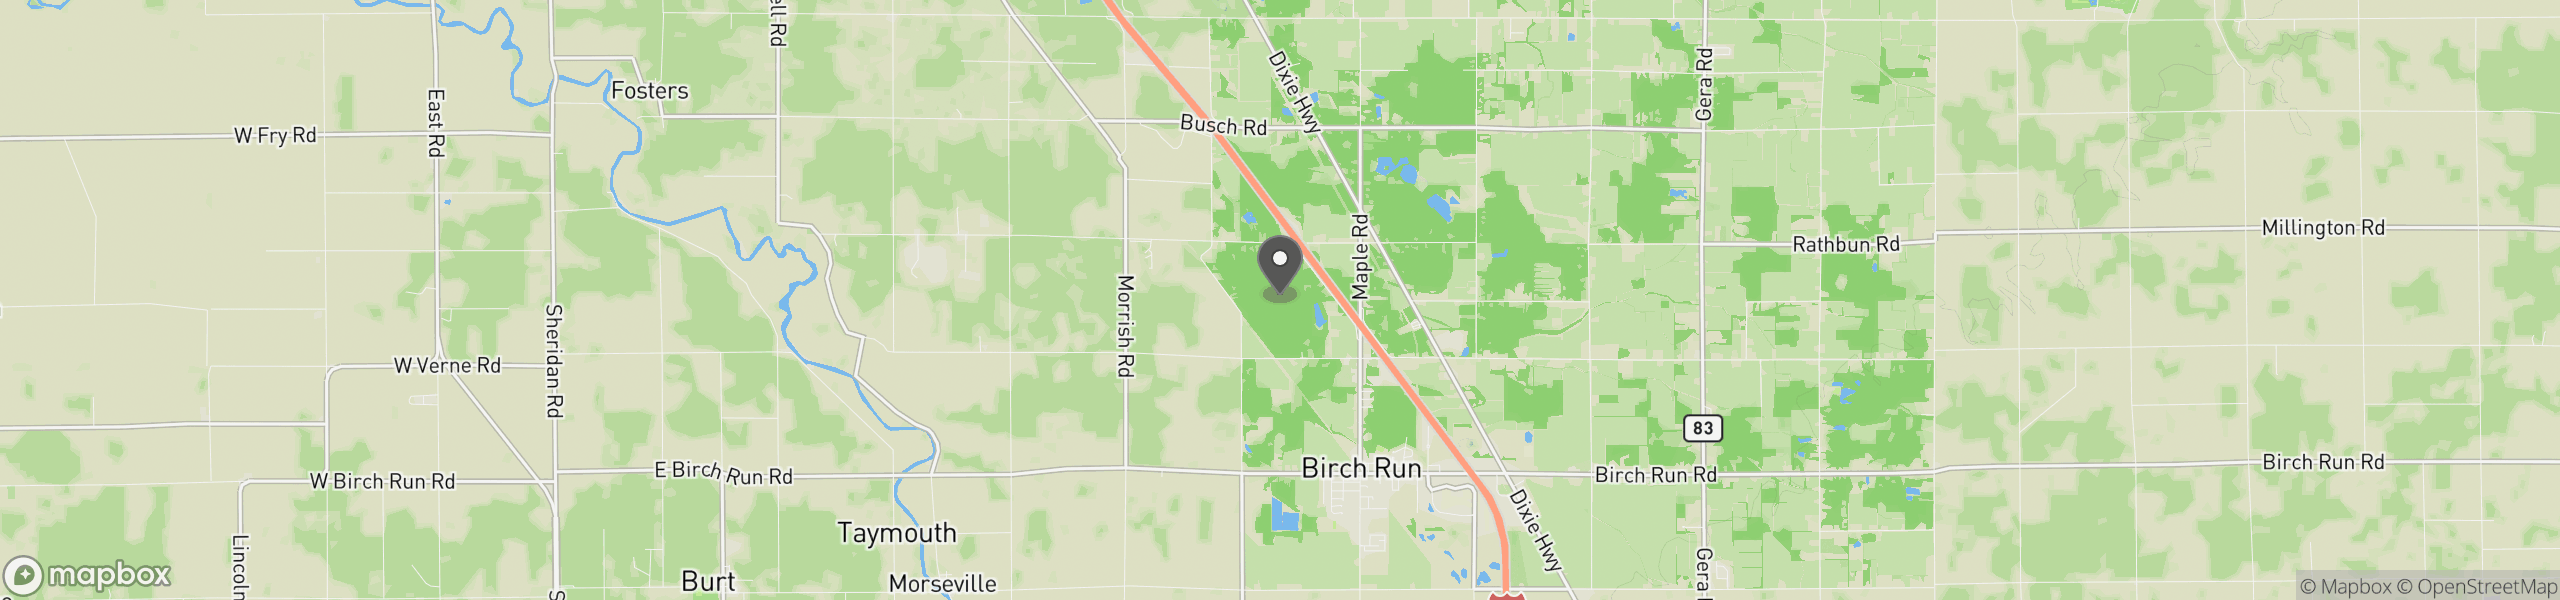 Birch Run, MI